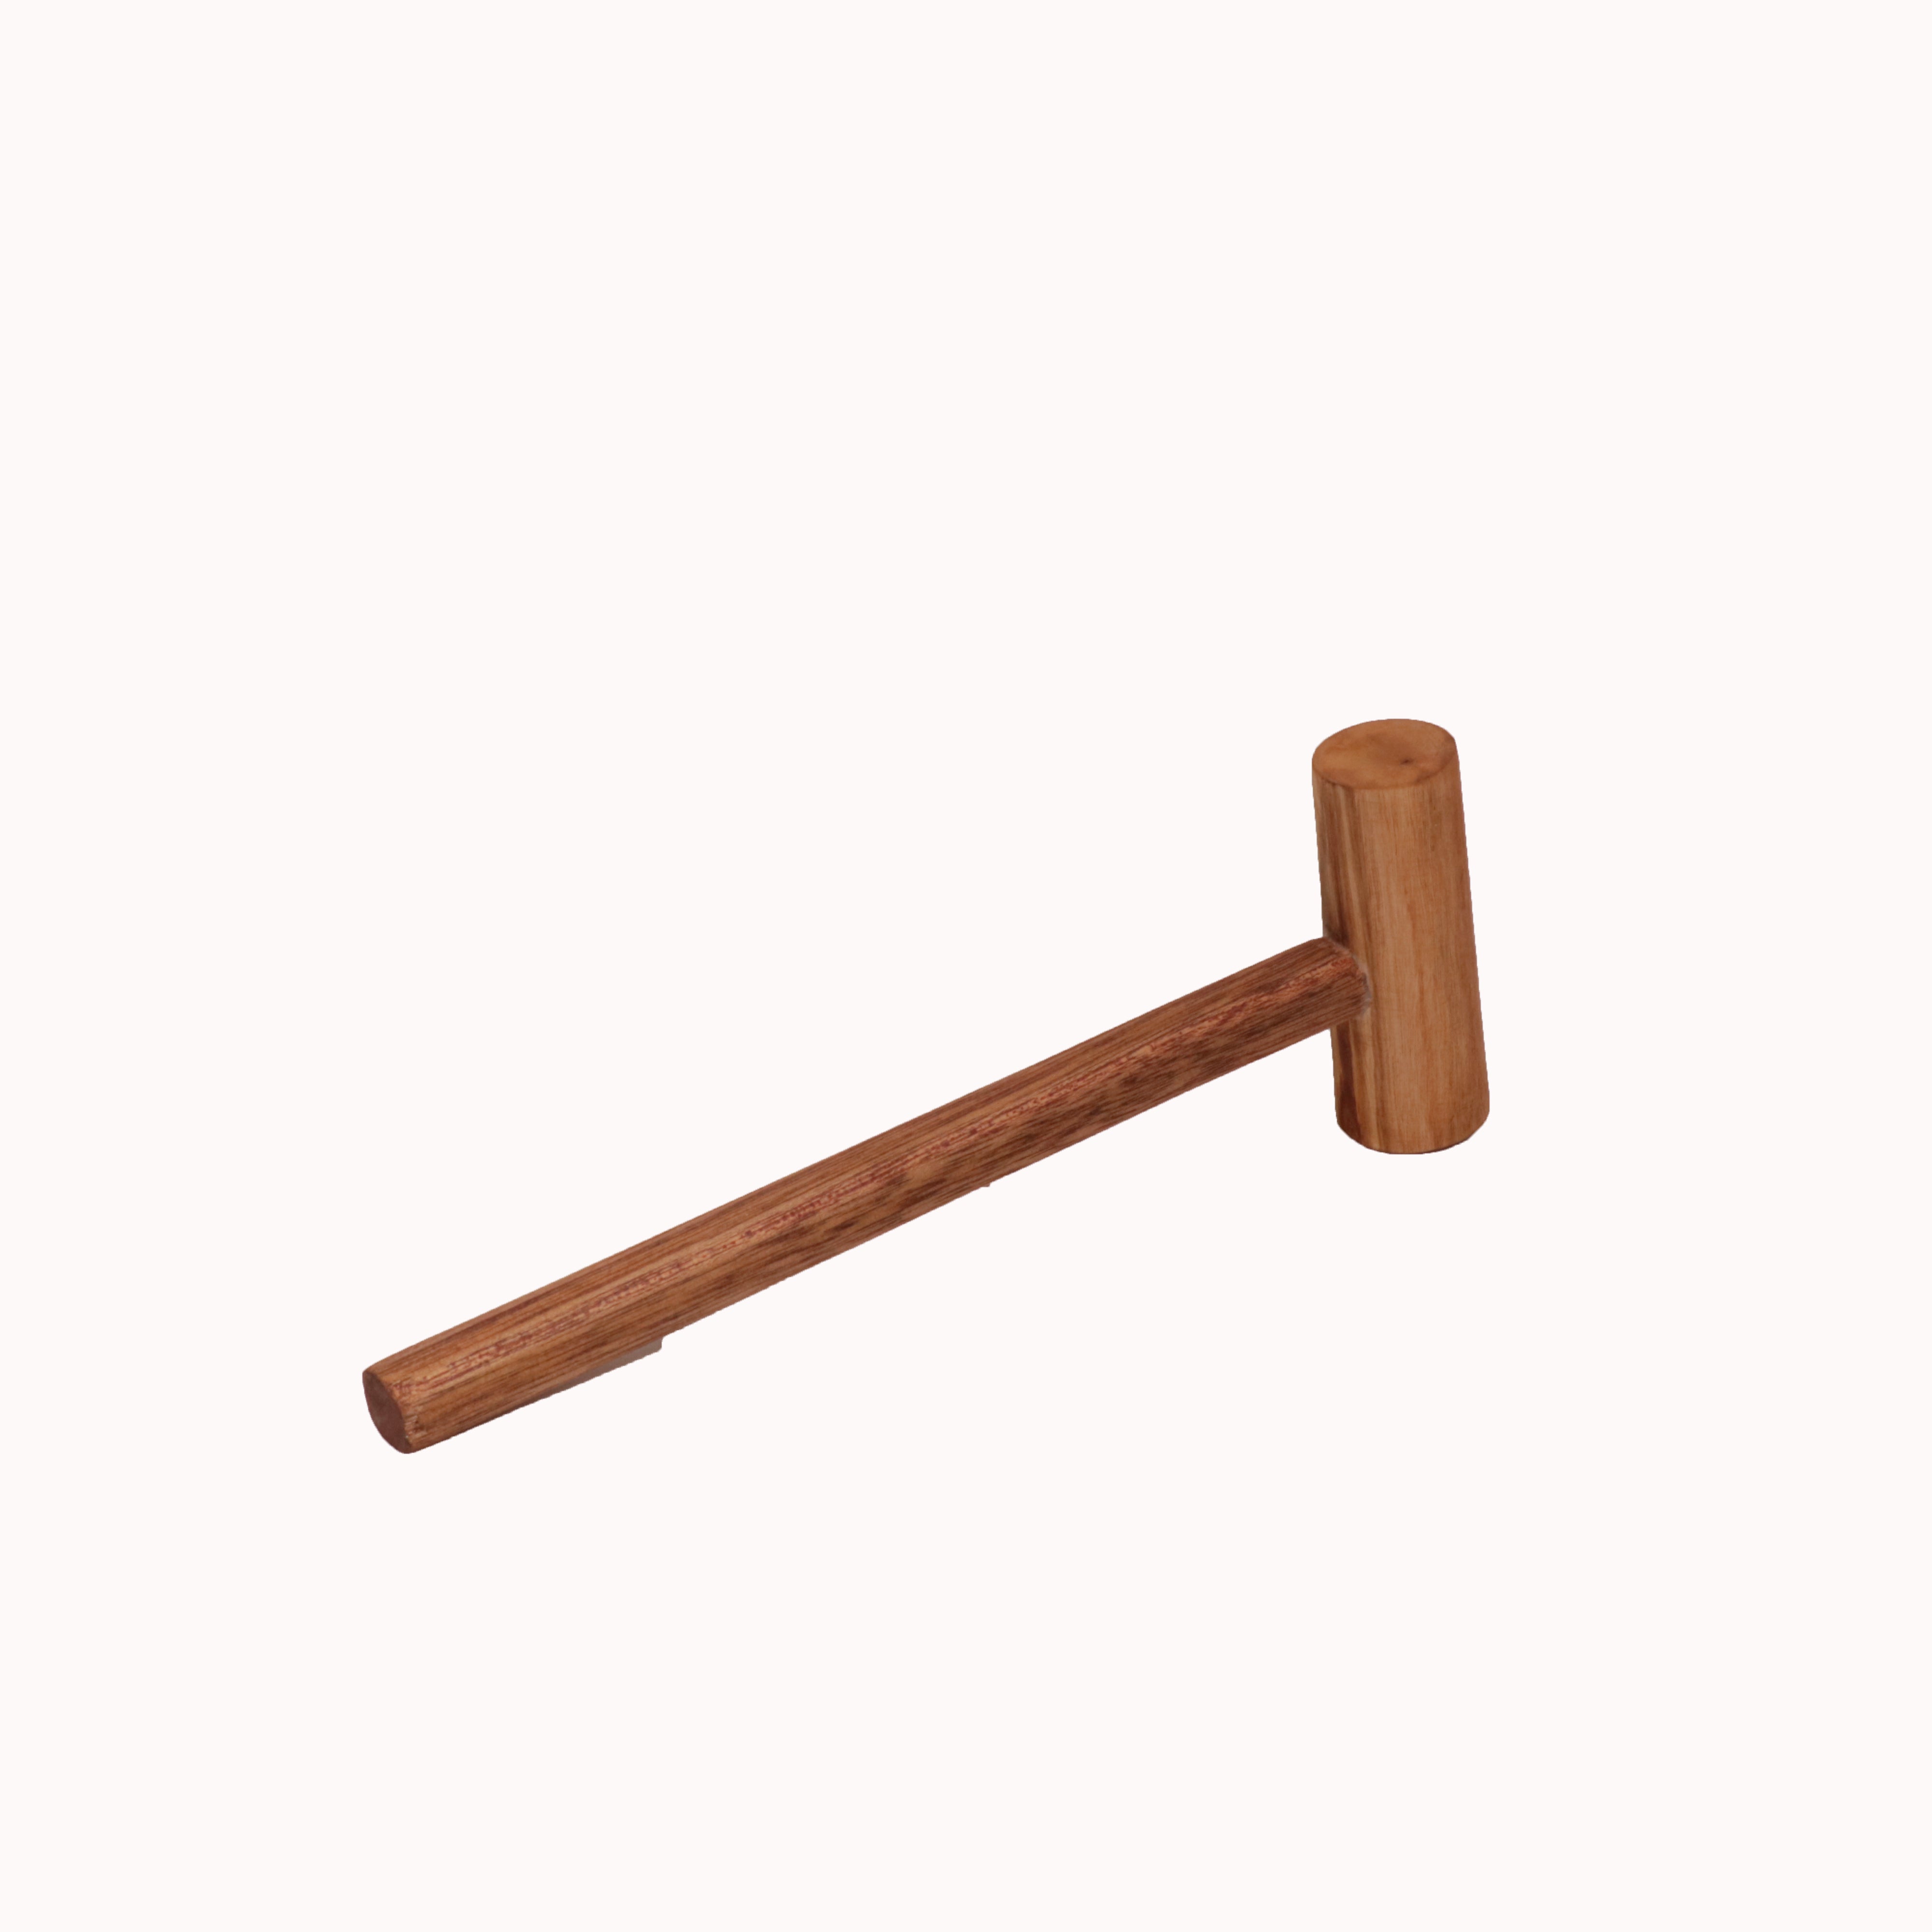 Sturdy Wooden Mallet Hammer